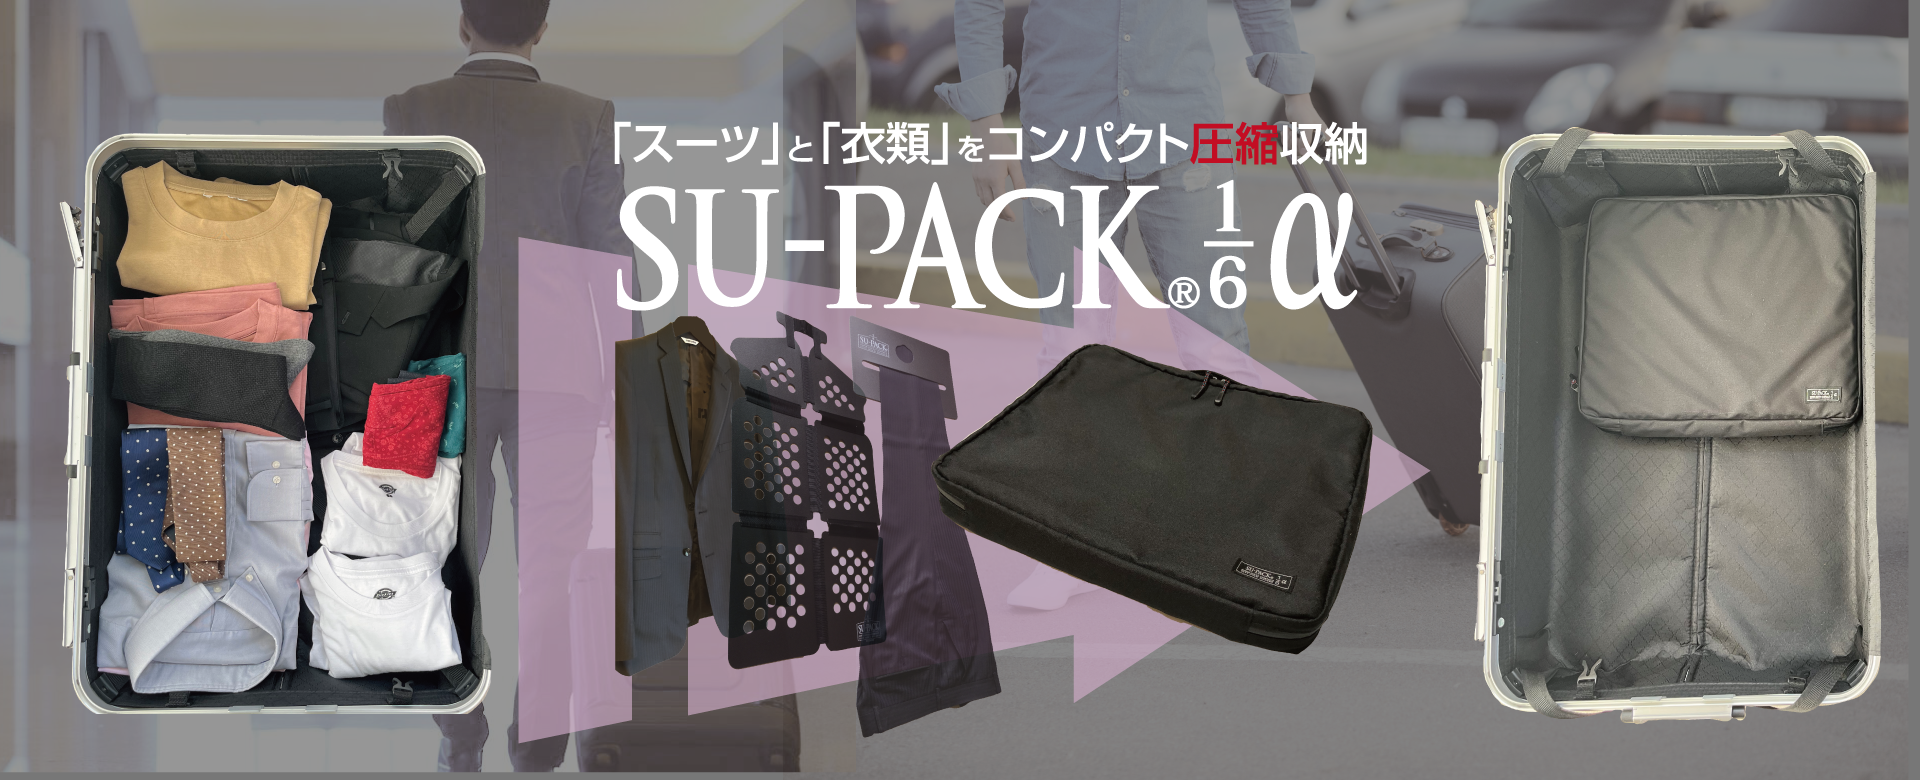 SU-PACK®1/6α 1stビュー画像 SU-PACK®1/6とスーツケース。それを使用した場合のスーツケース内のスペースの空き具合の画像